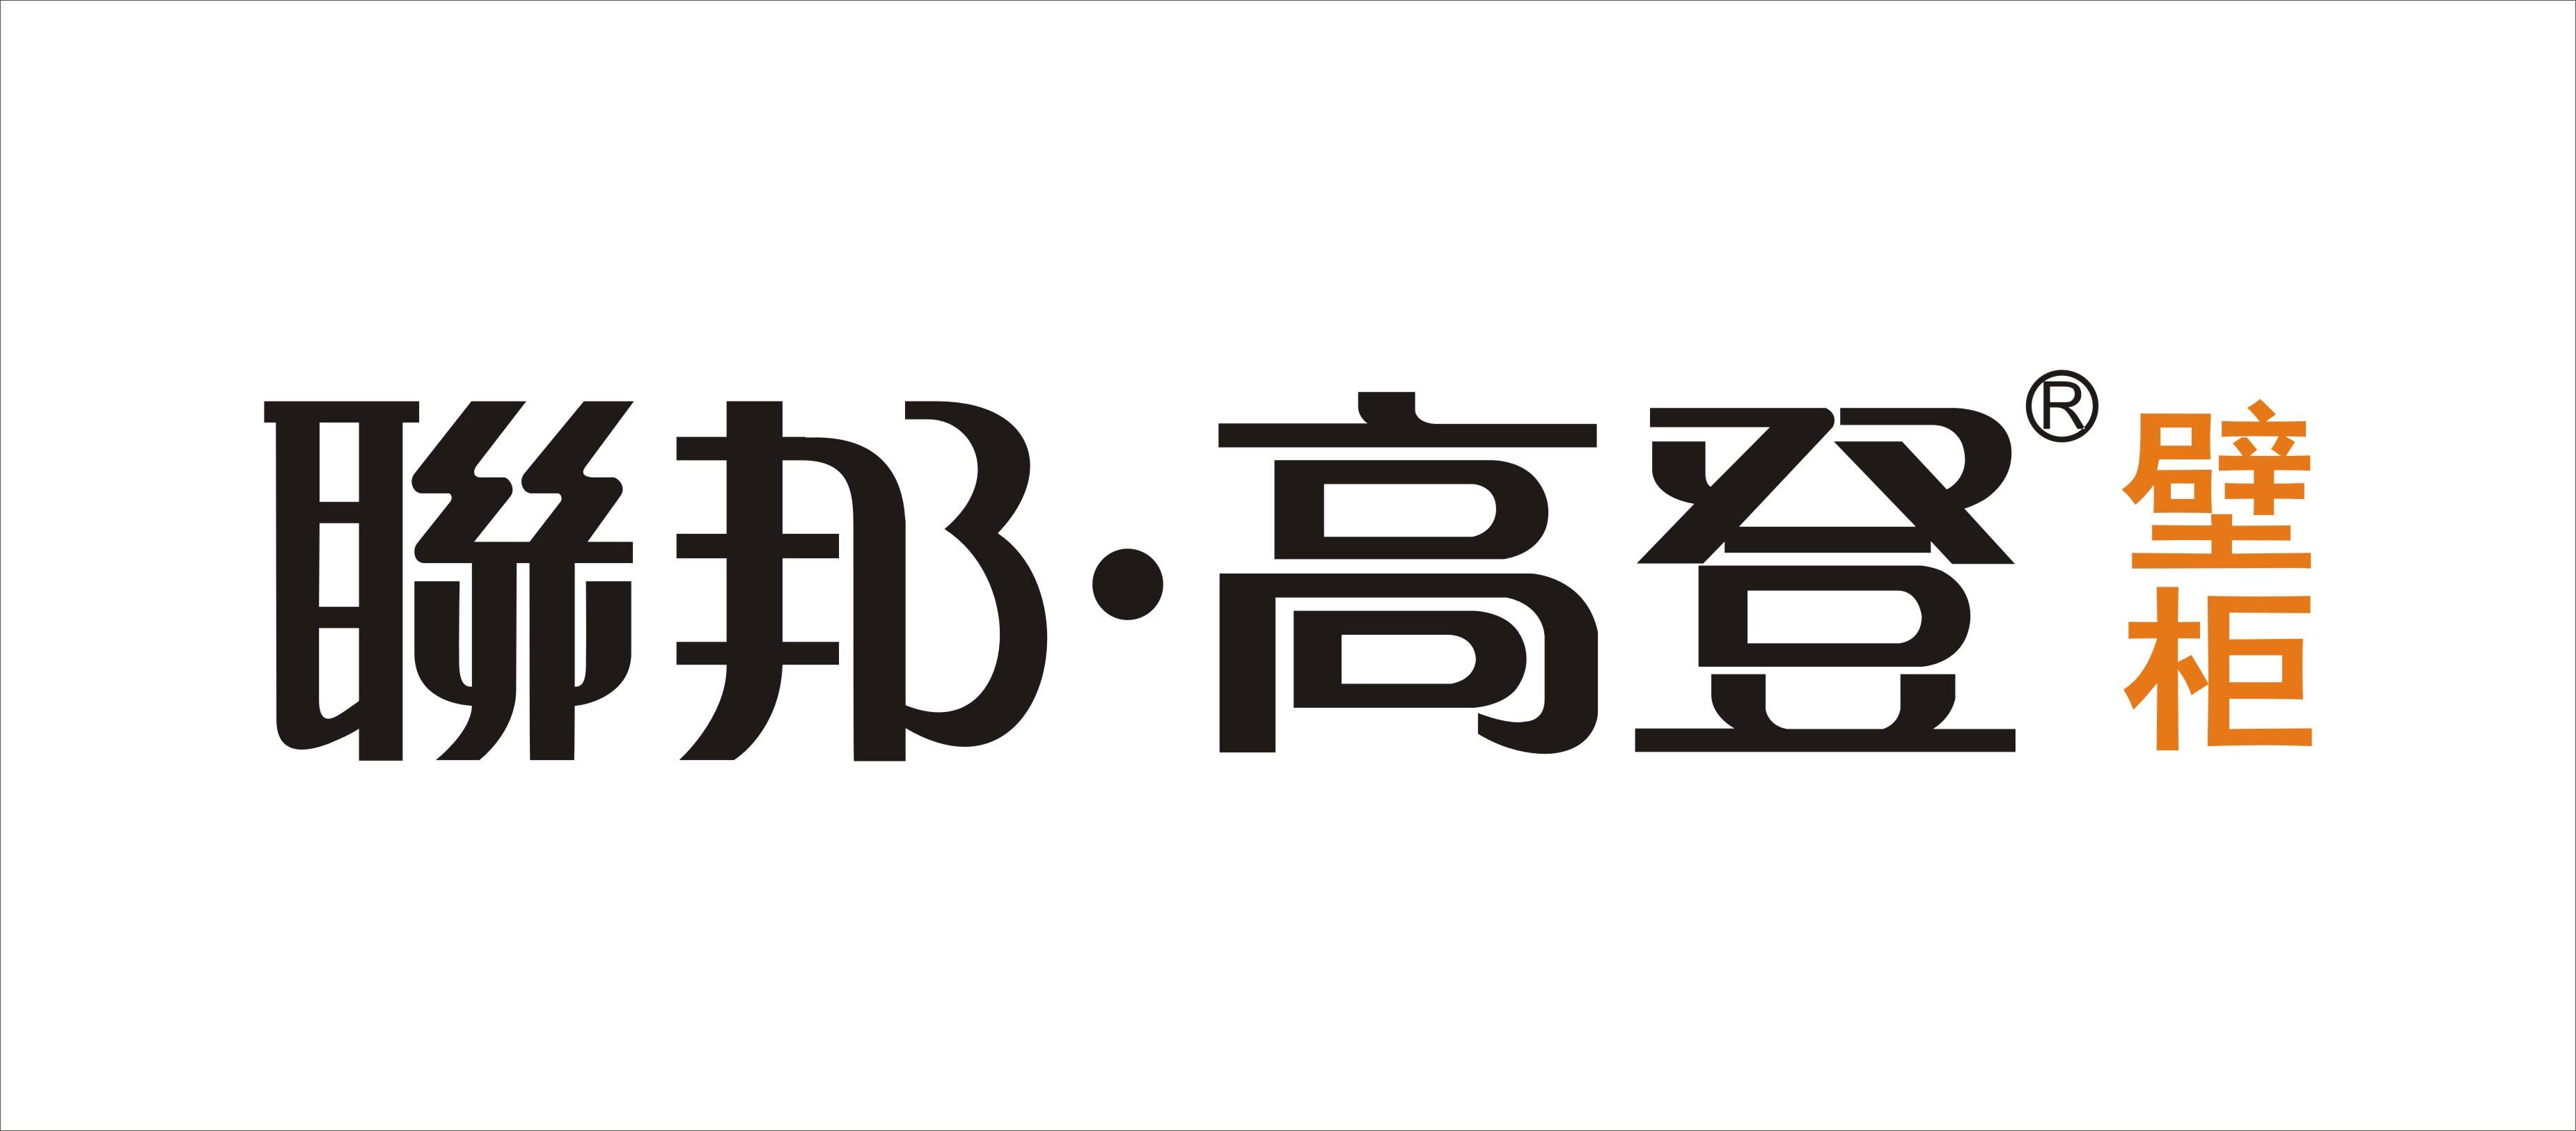 联邦家私logo图片